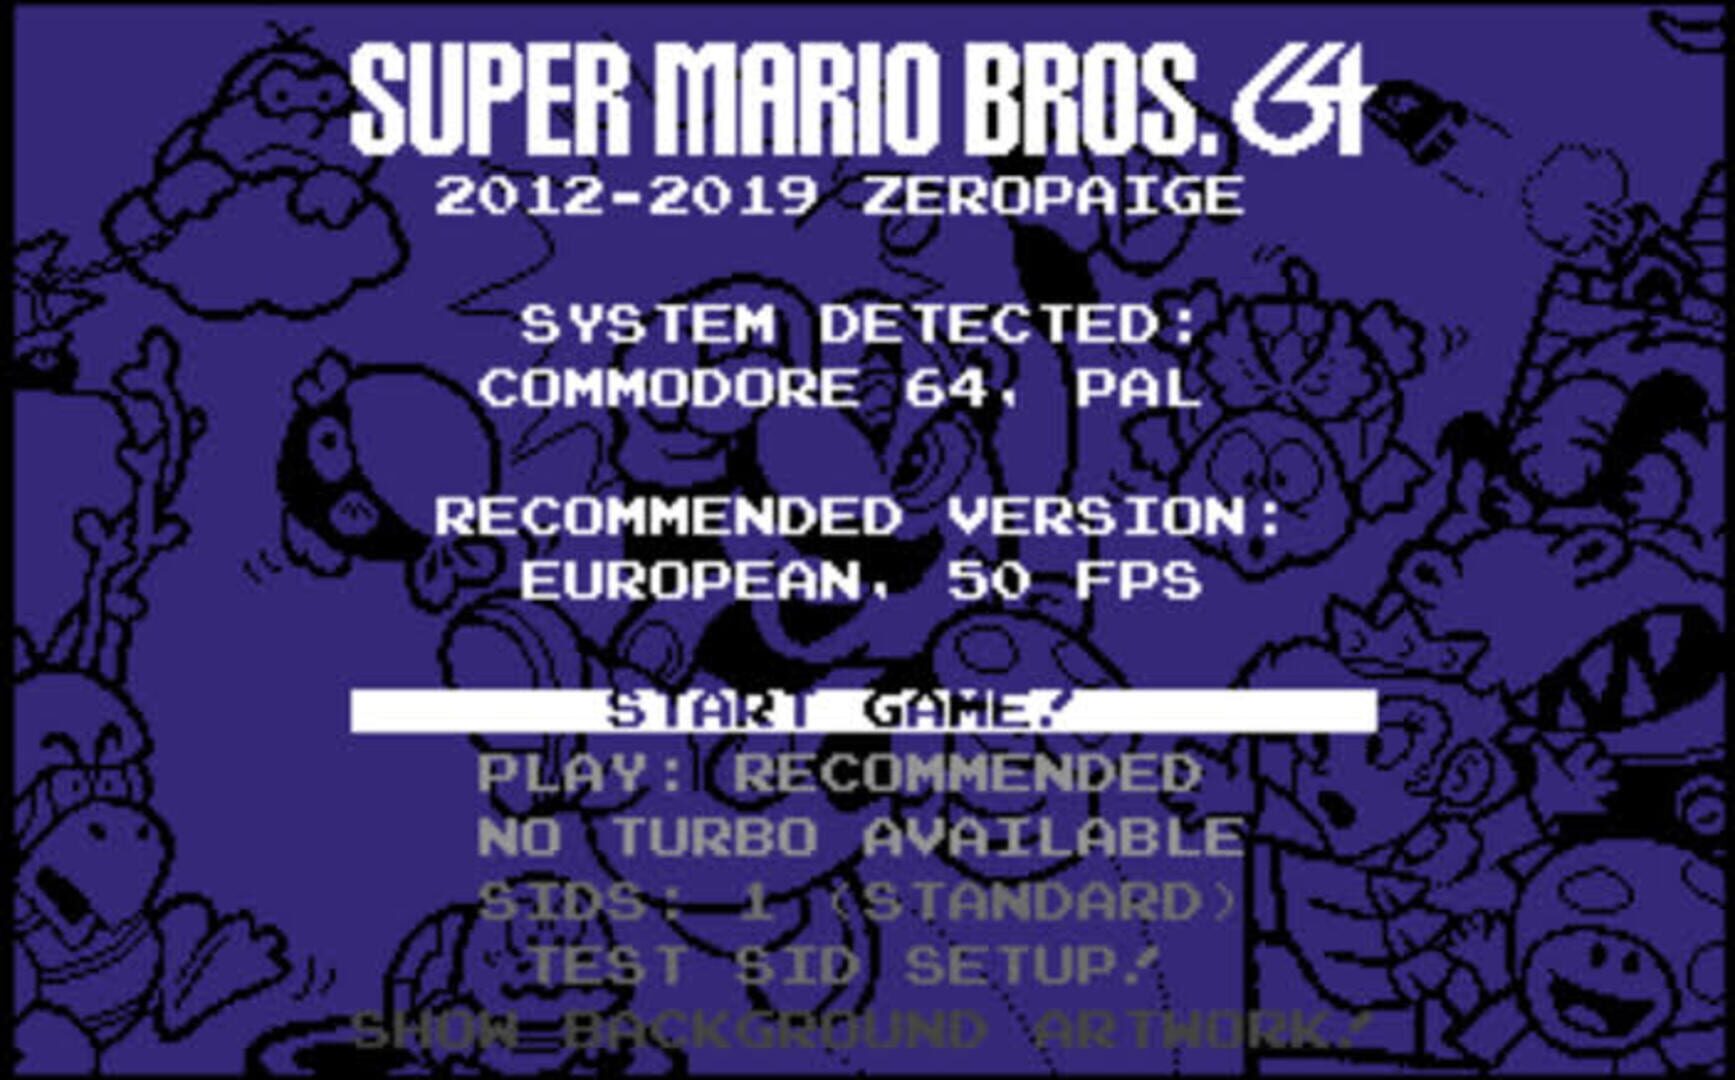 Super Mario Bros. 64 Image